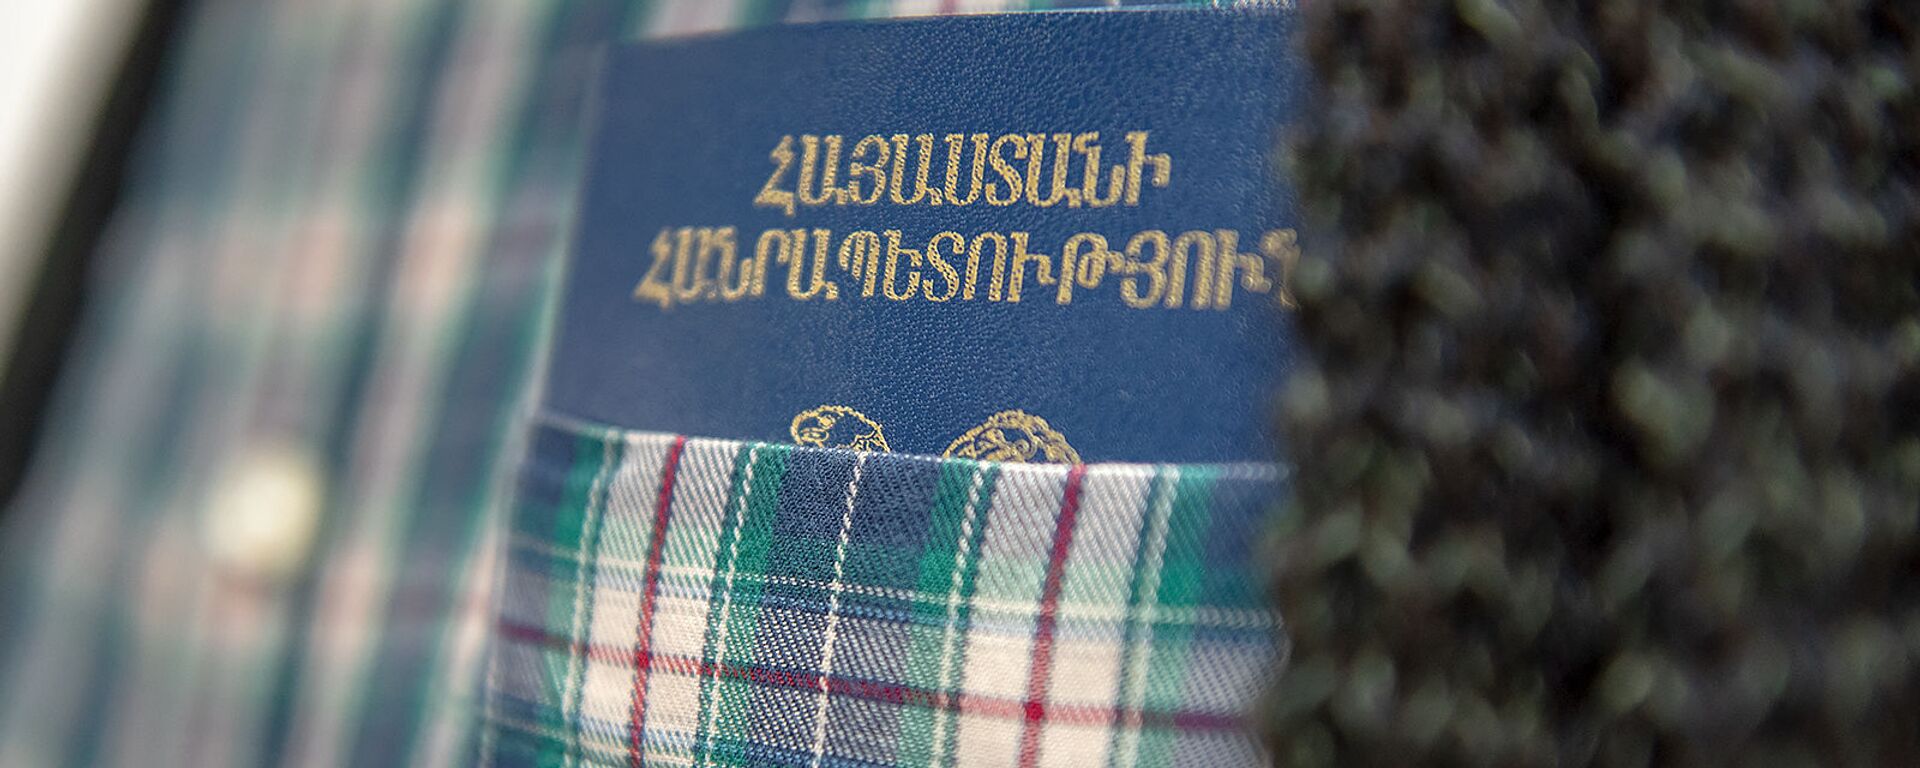 Паспорт гражданина Армении - Sputnik Армения, 1920, 19.11.2019